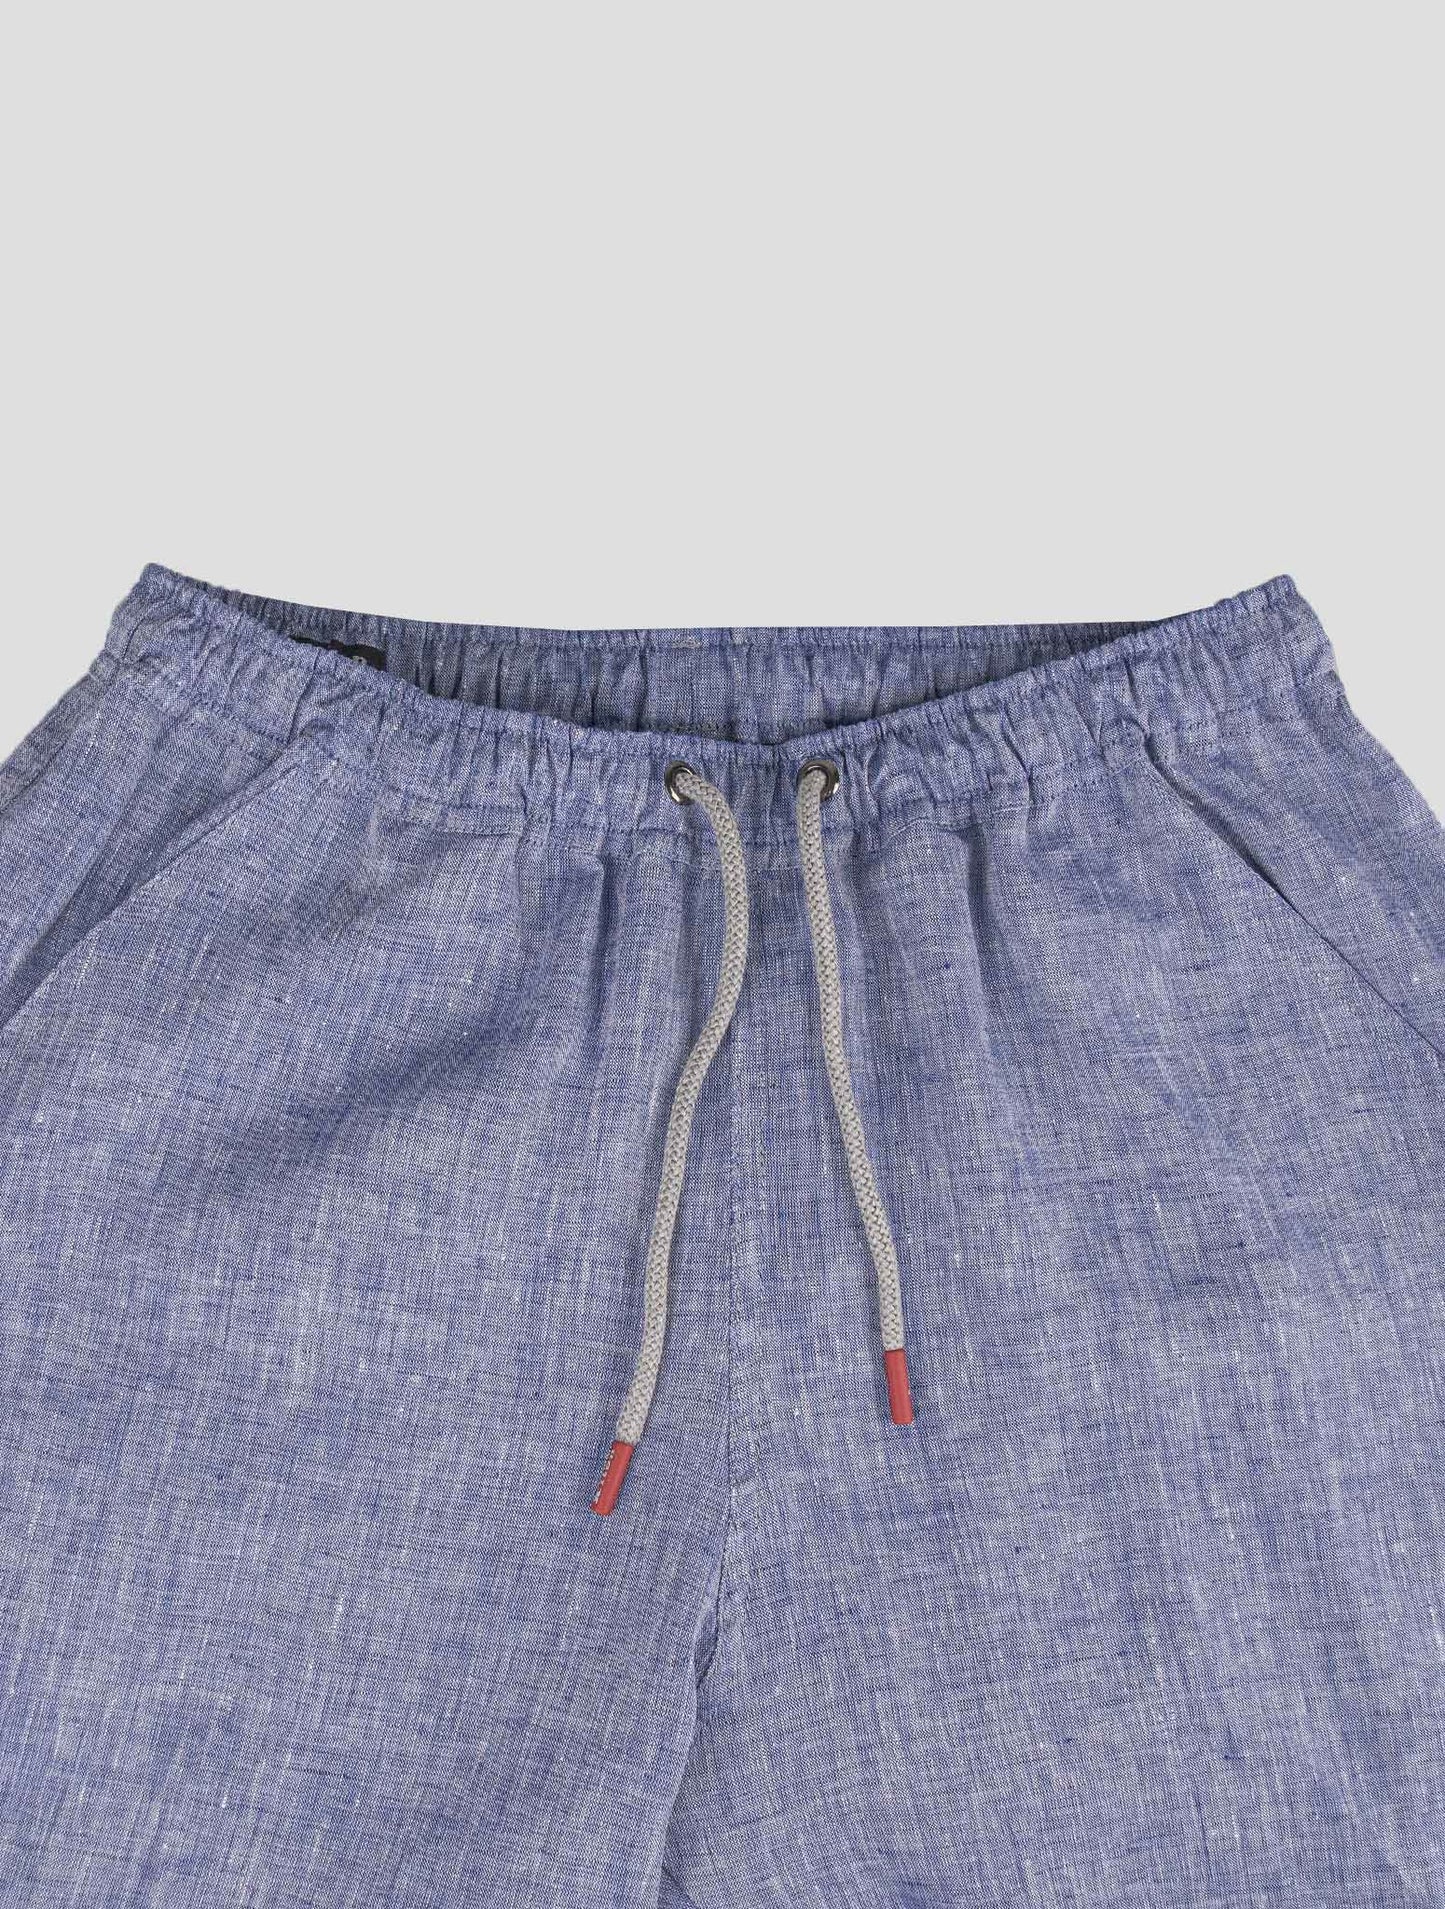 Pantalones cortos de lino en violeta de Kiton